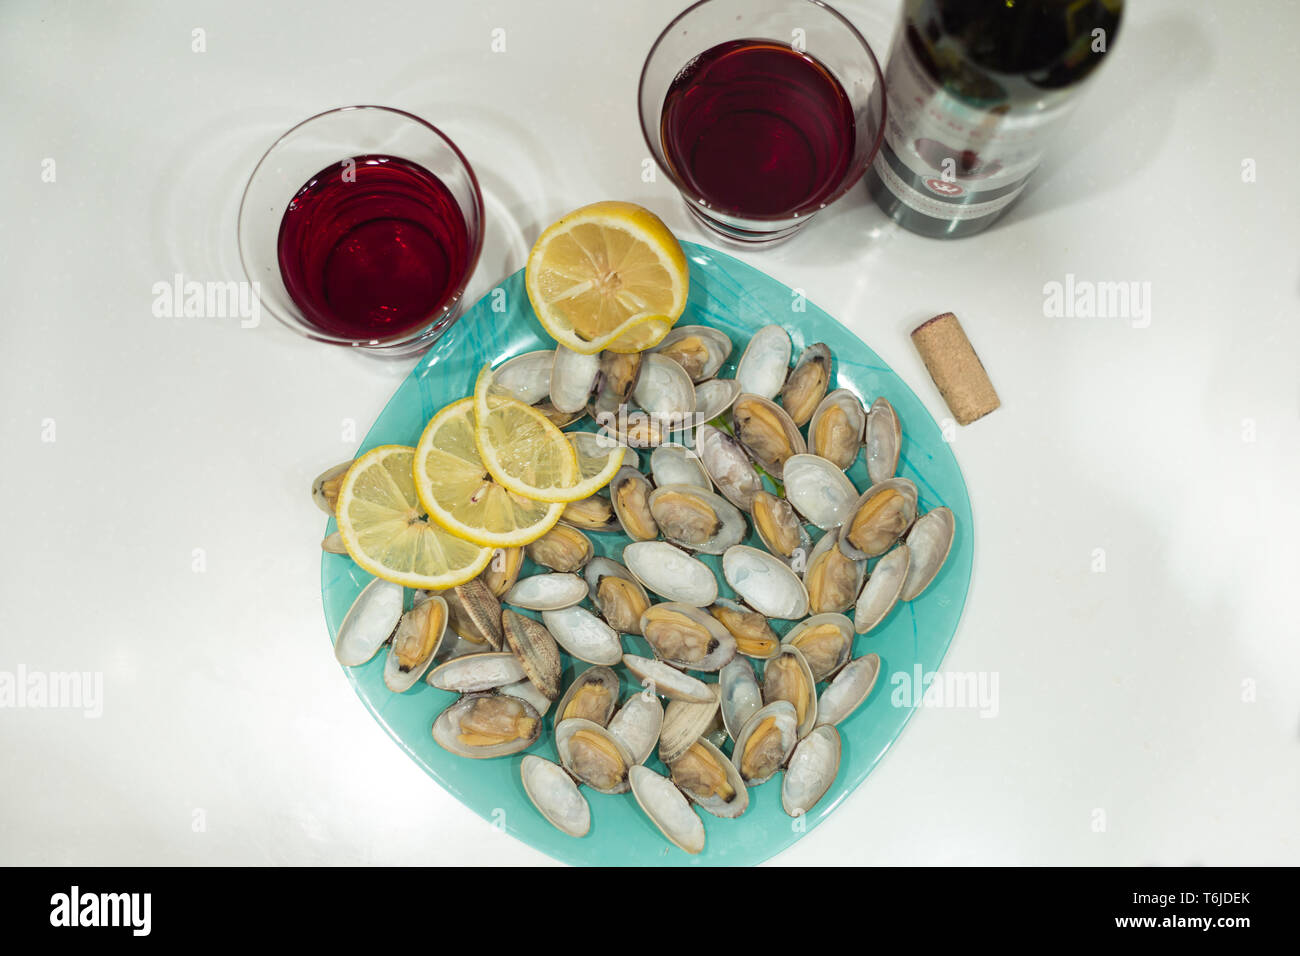 Lecker clam Spisula-muschel-auf Folie Kochen im Ofen gegrillte Neben Gläsern und einer Flasche roten Granatapfel Wein Stockfoto